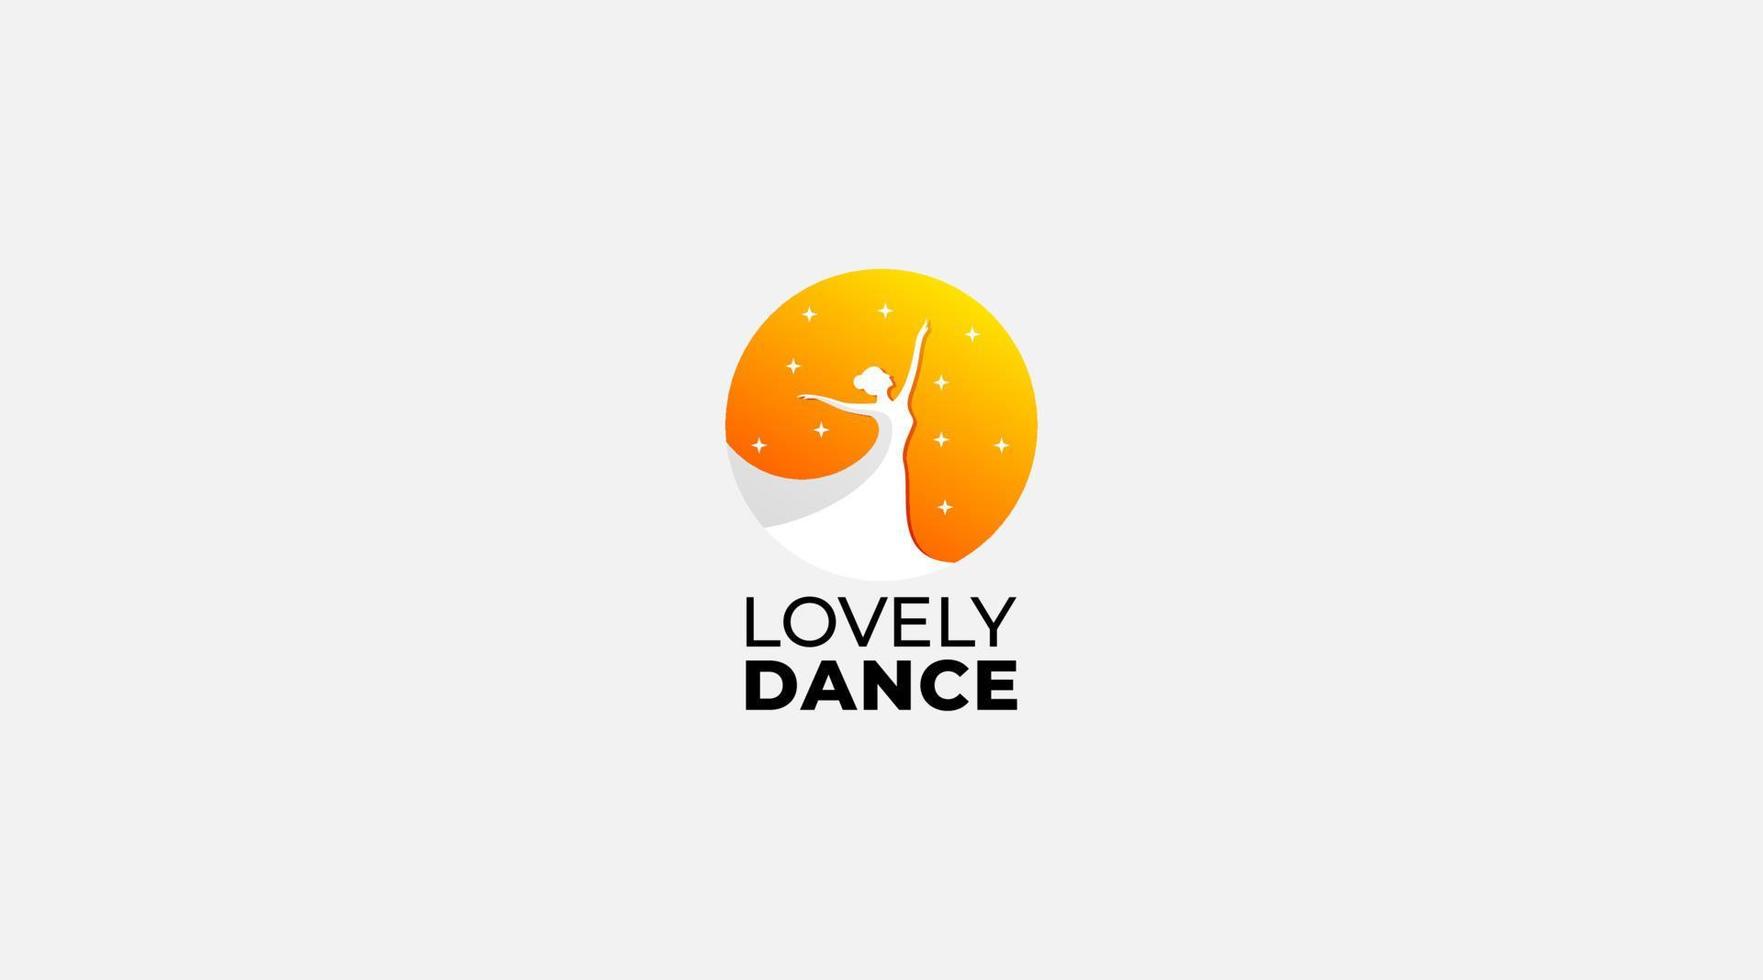 Lovely dance vector logo design illustration